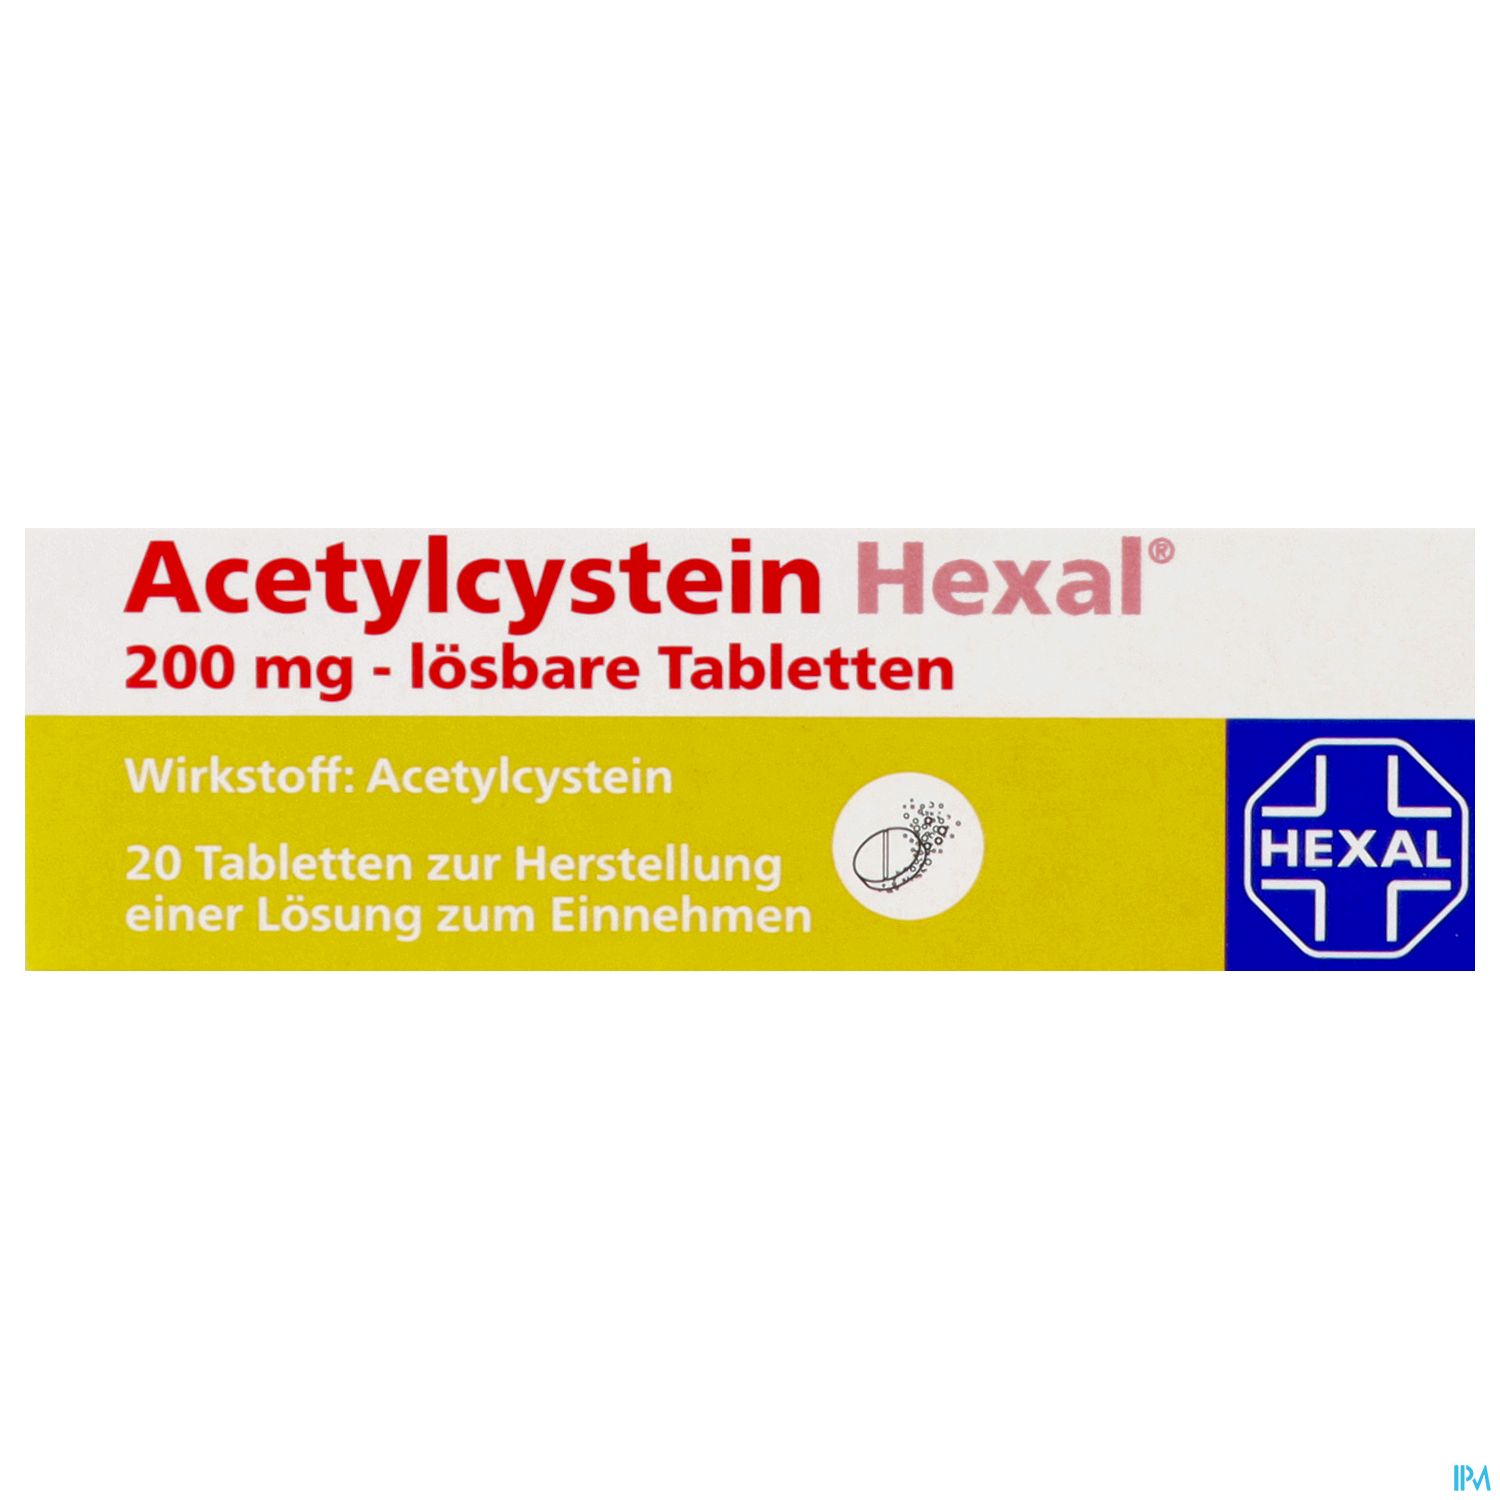 Acetylcystein Hexal 200 mg - lösbare Tabletten